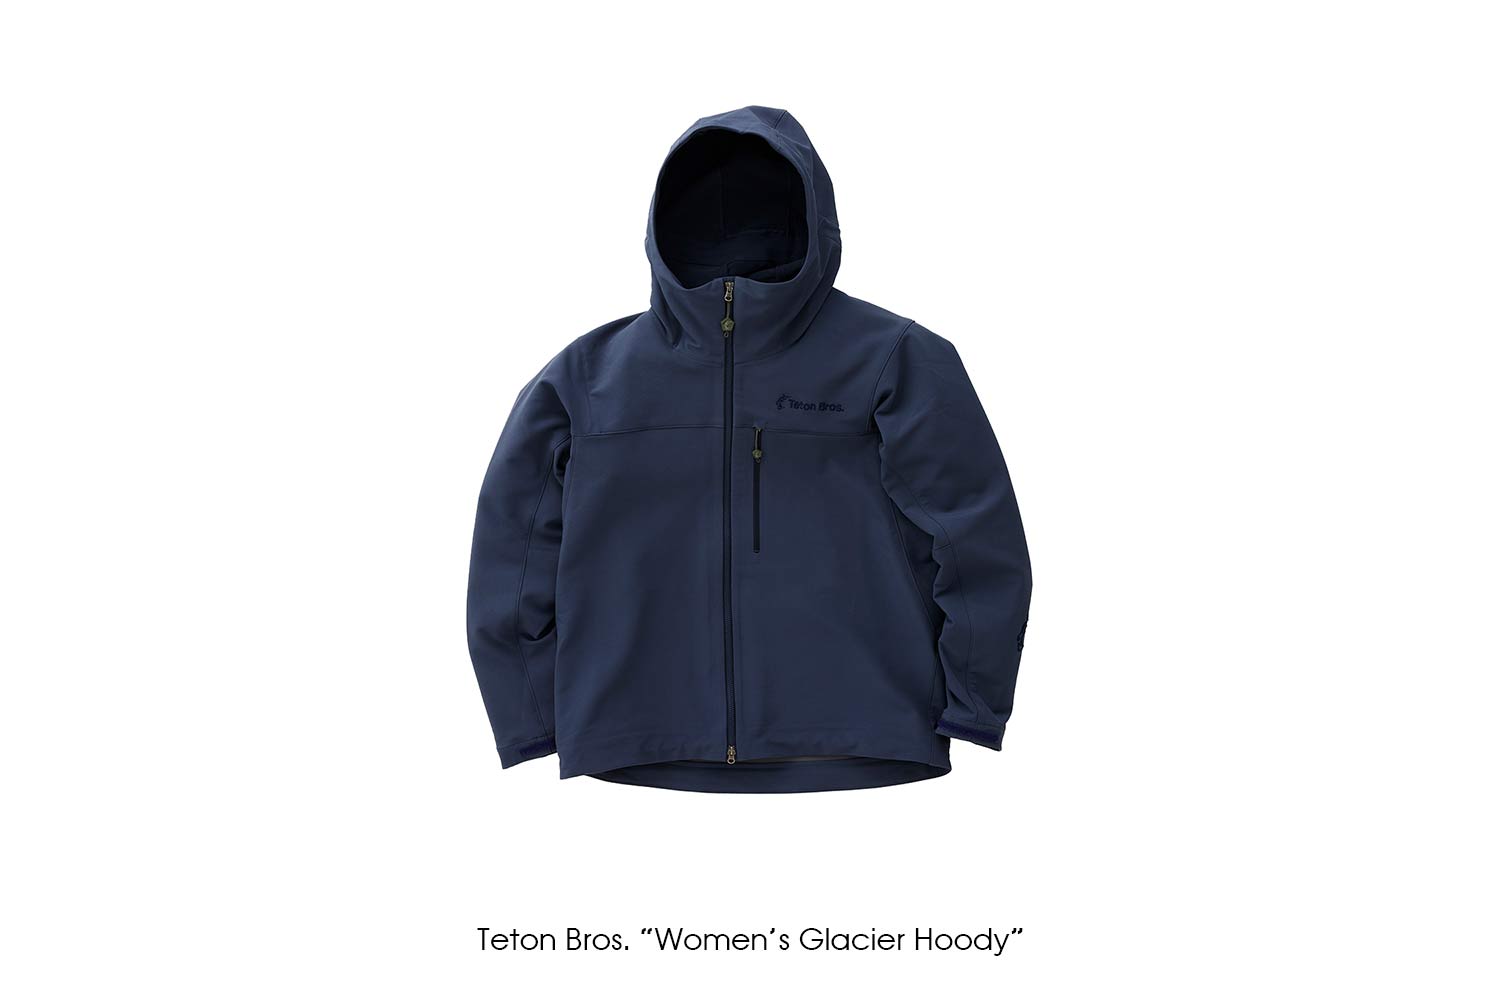 Teton Bros. "Women's Glacier Hoody"